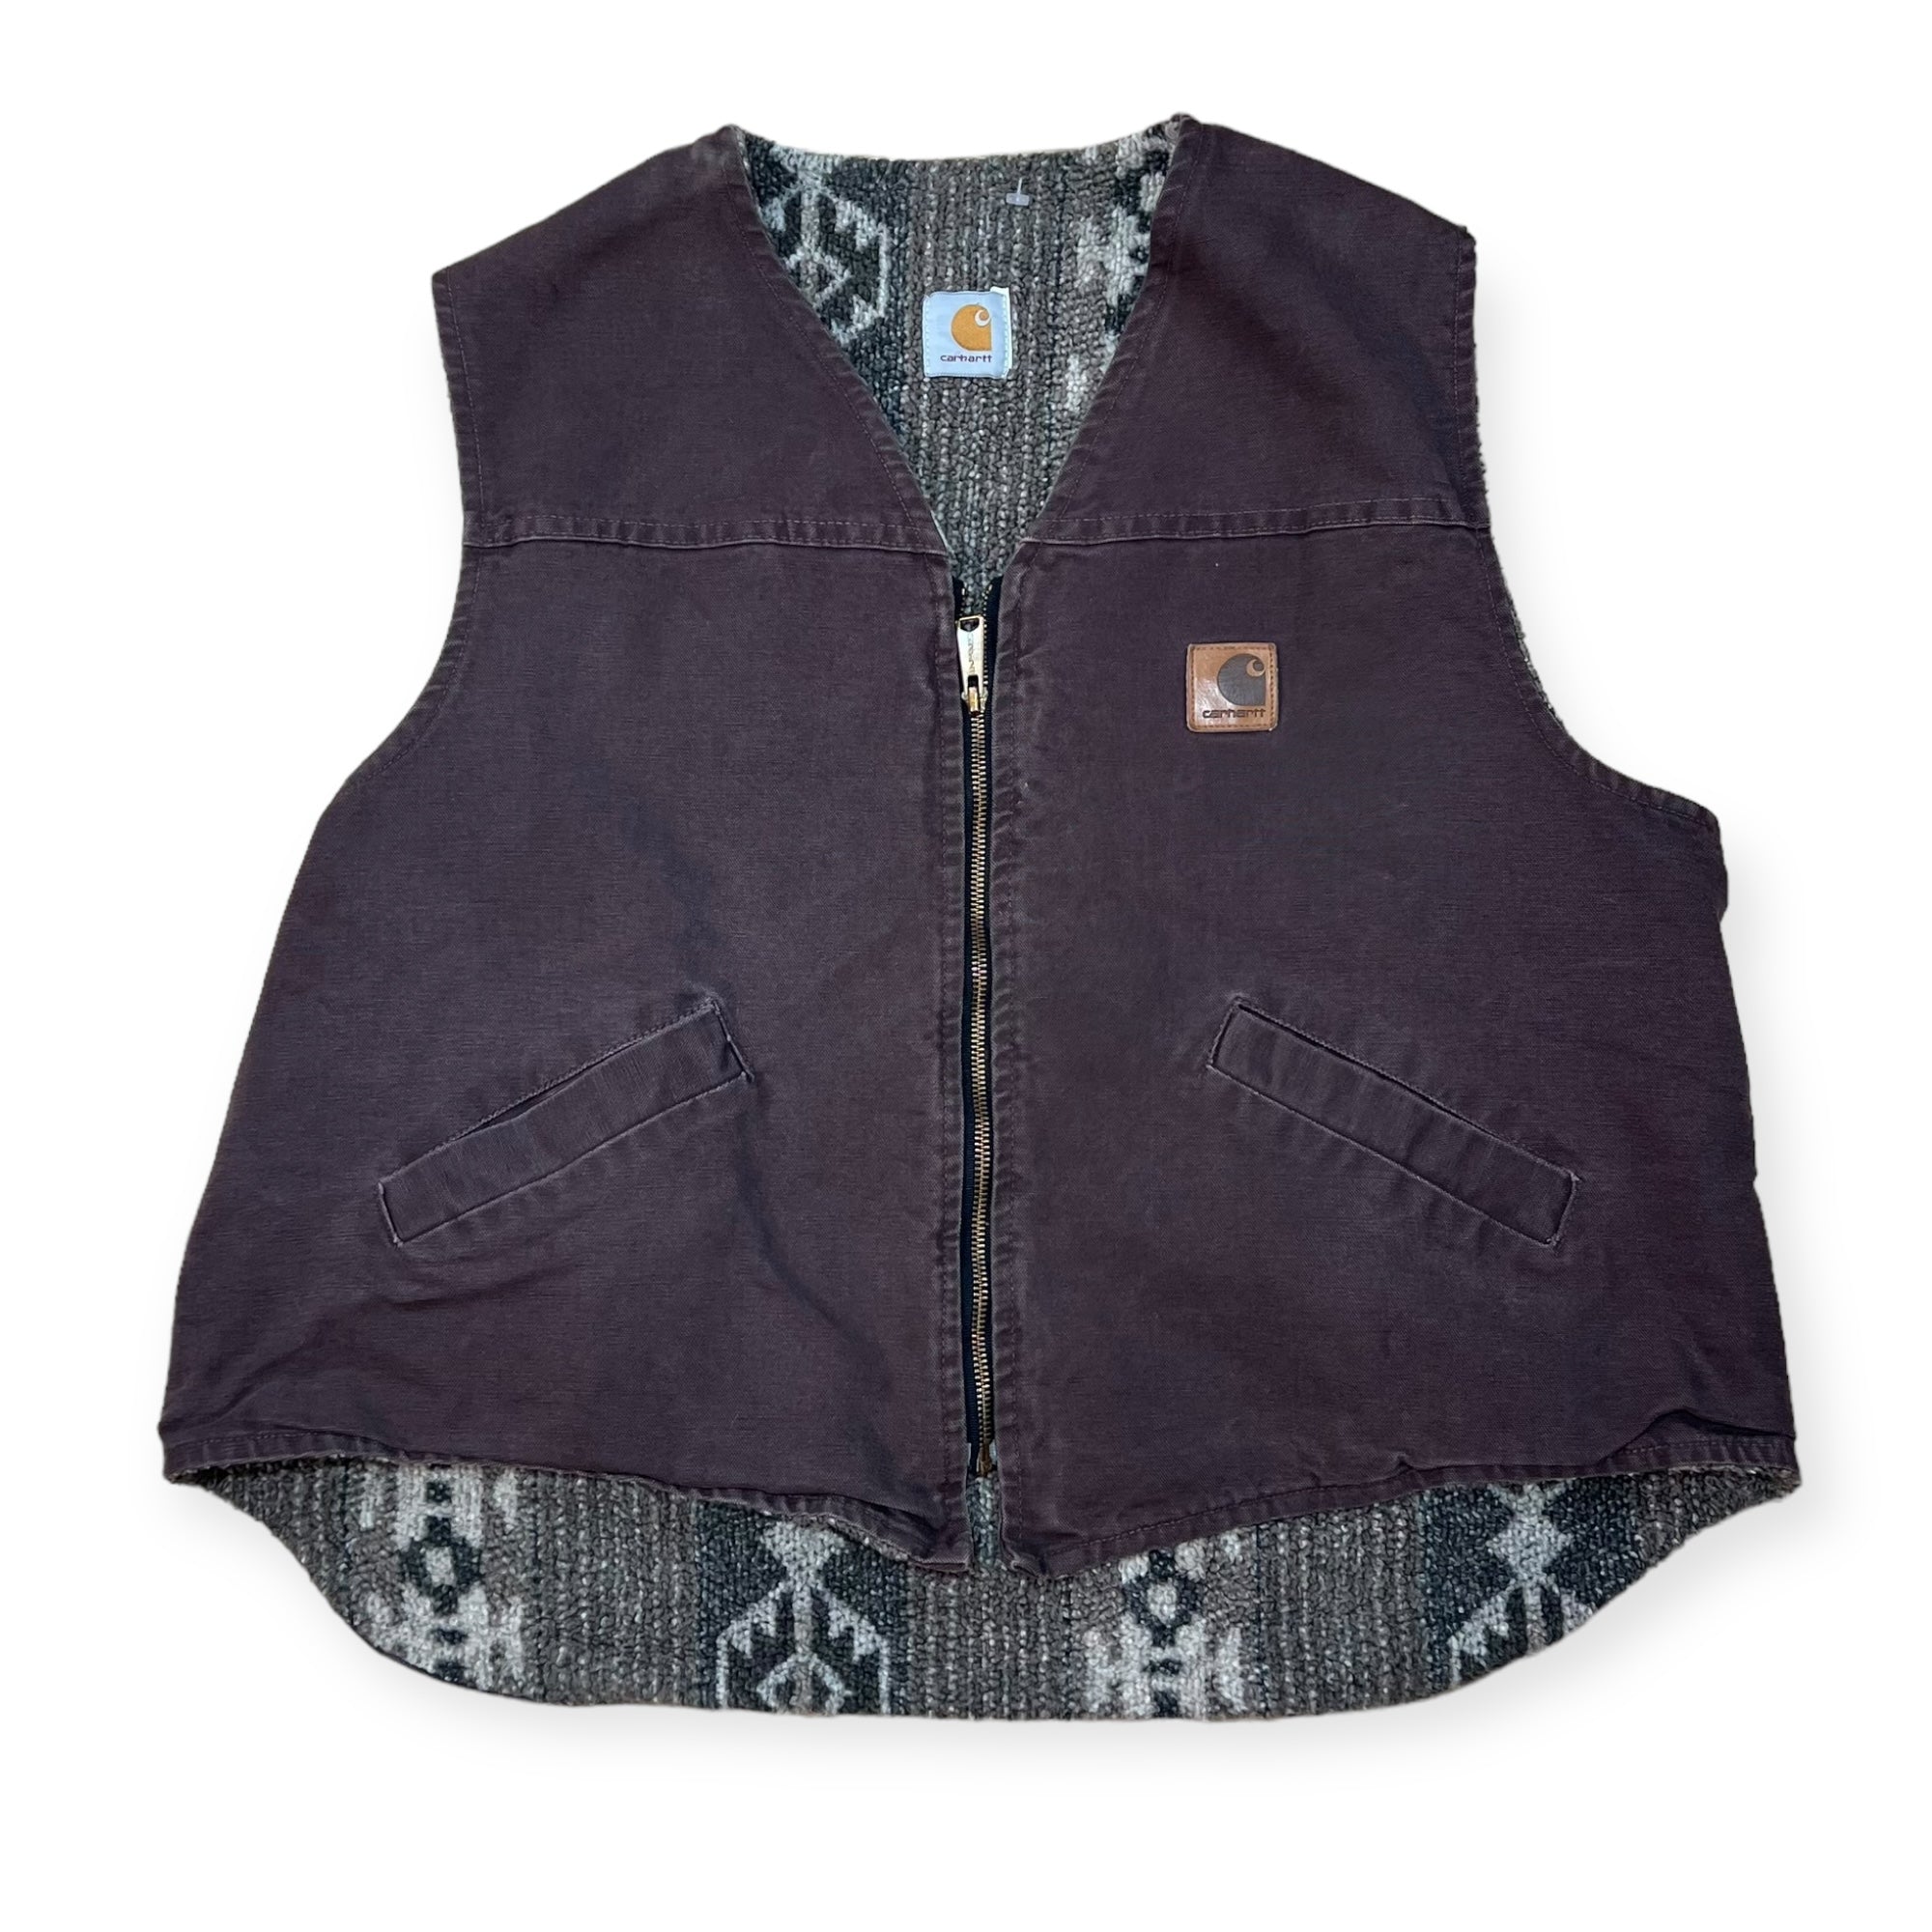 Carhartt fleece lined vest (XL) – heatstreet1